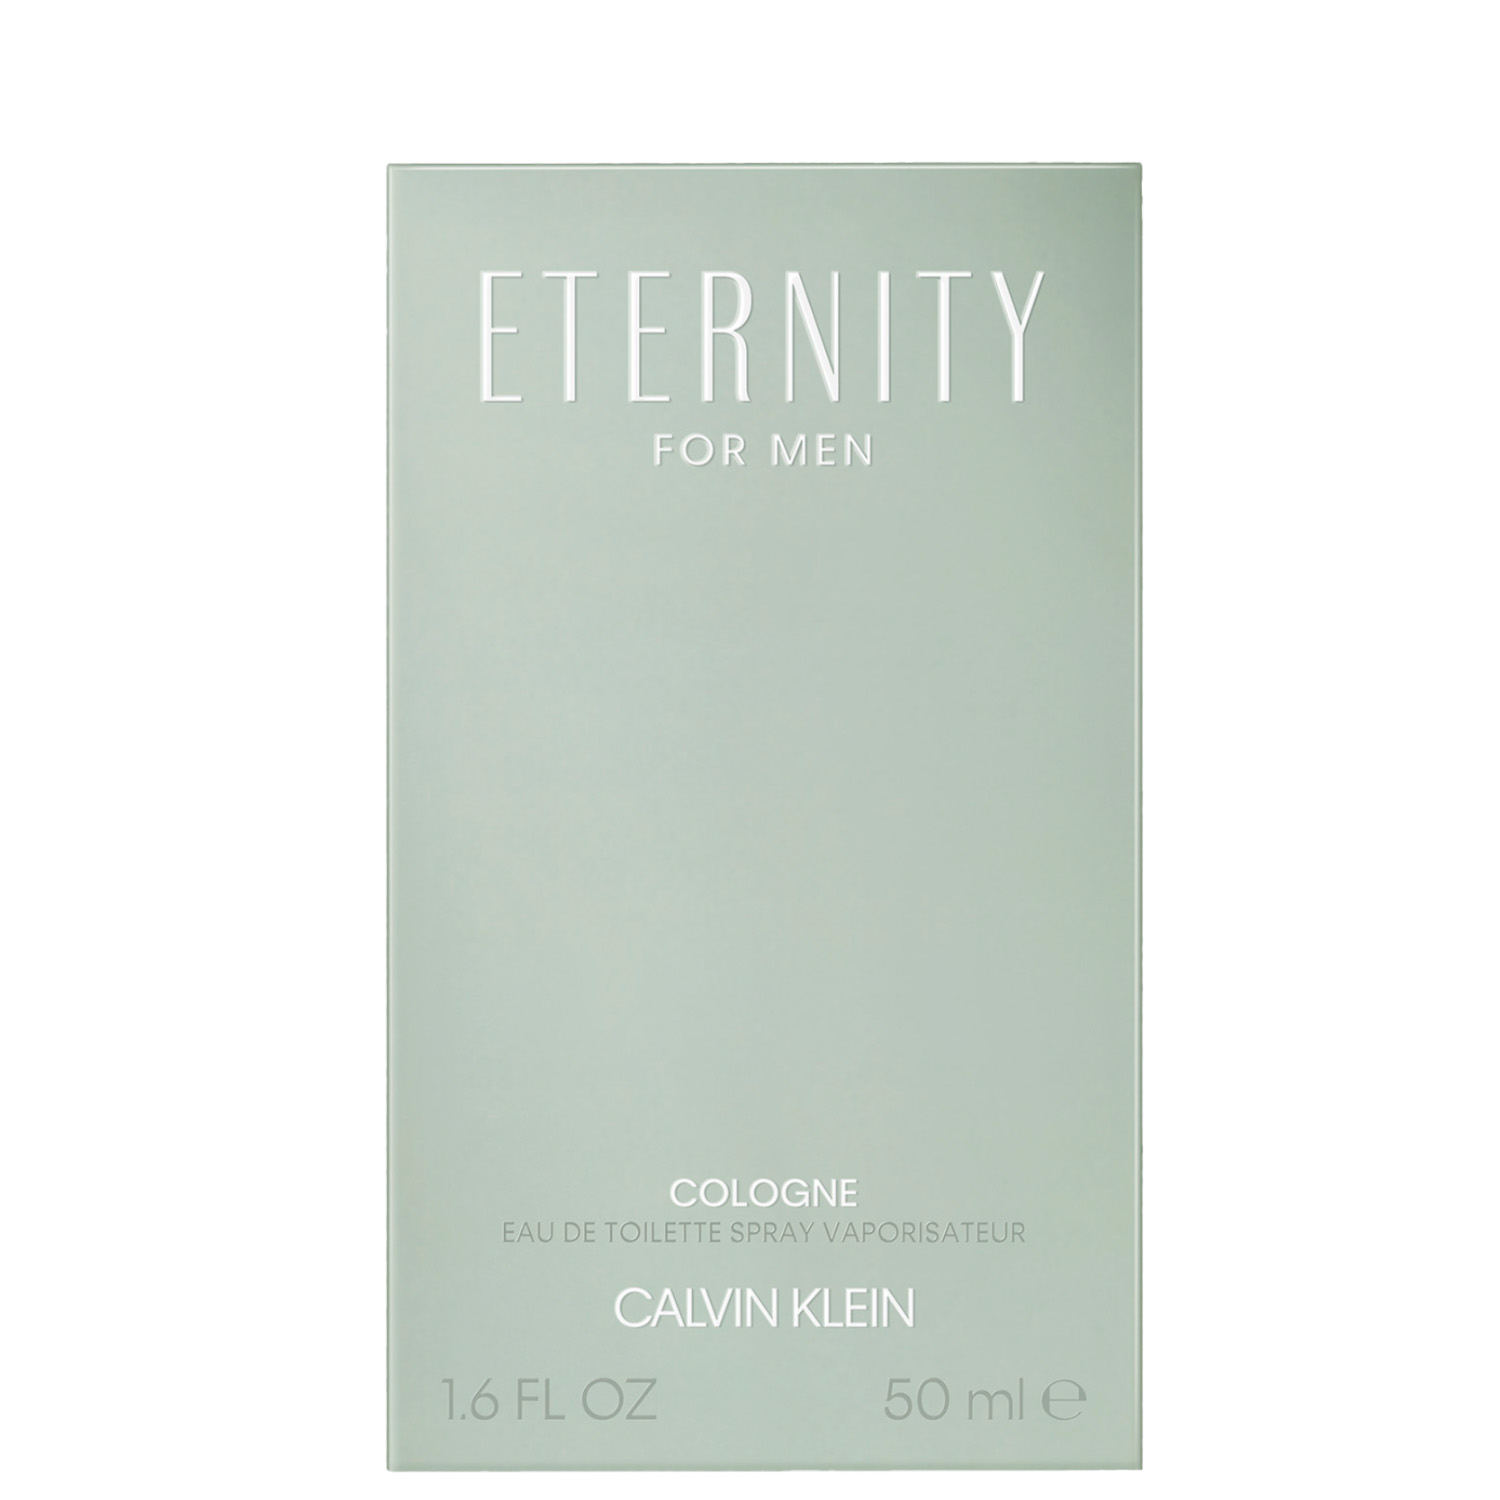 Calvin Klein Eternity for Men Cologne Eau de Toilette 50ml